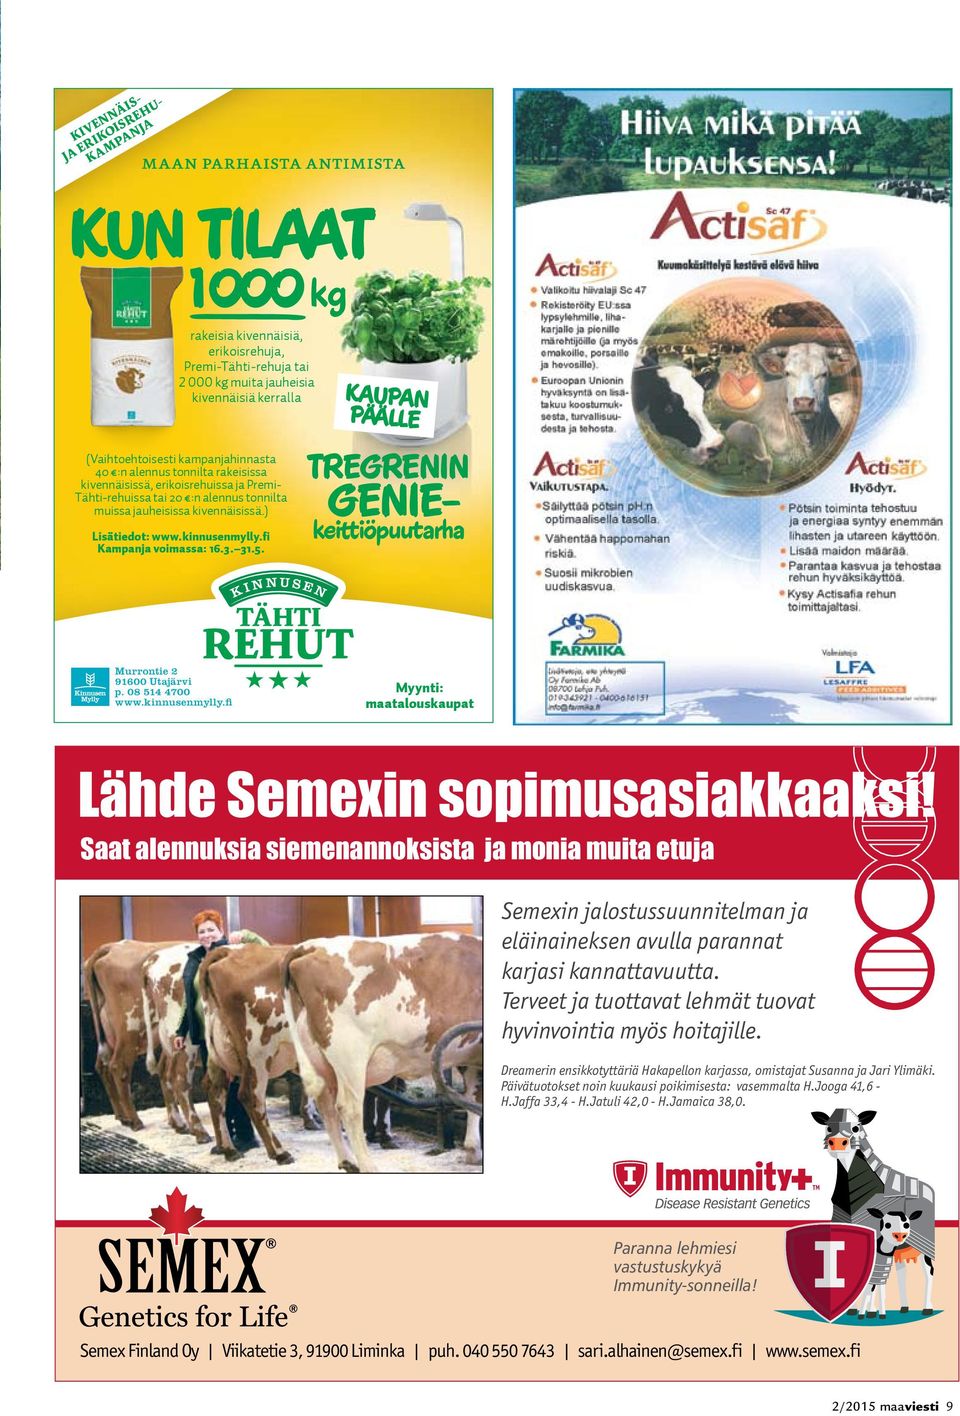 TREGRENIN GENIEkeittiöpuutarha Murrontie 2 91600 Utajärvi p. 08 514 4700 www.kinnusenmylly.fi Myynti: maatalouskaupat Lähde Semexin sopimusasiakkaaksi!